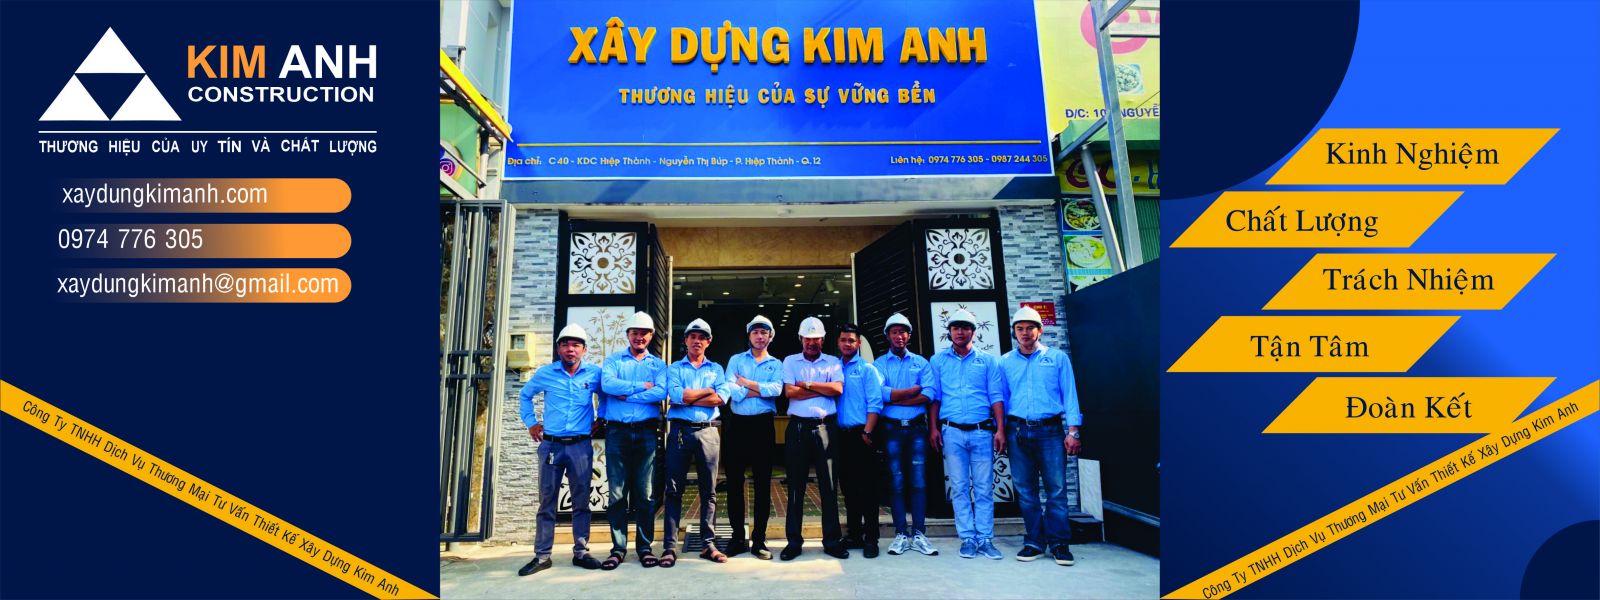 xây nhà gò vấp-công ty xây dựng kim anh-xaydungkimanh.com